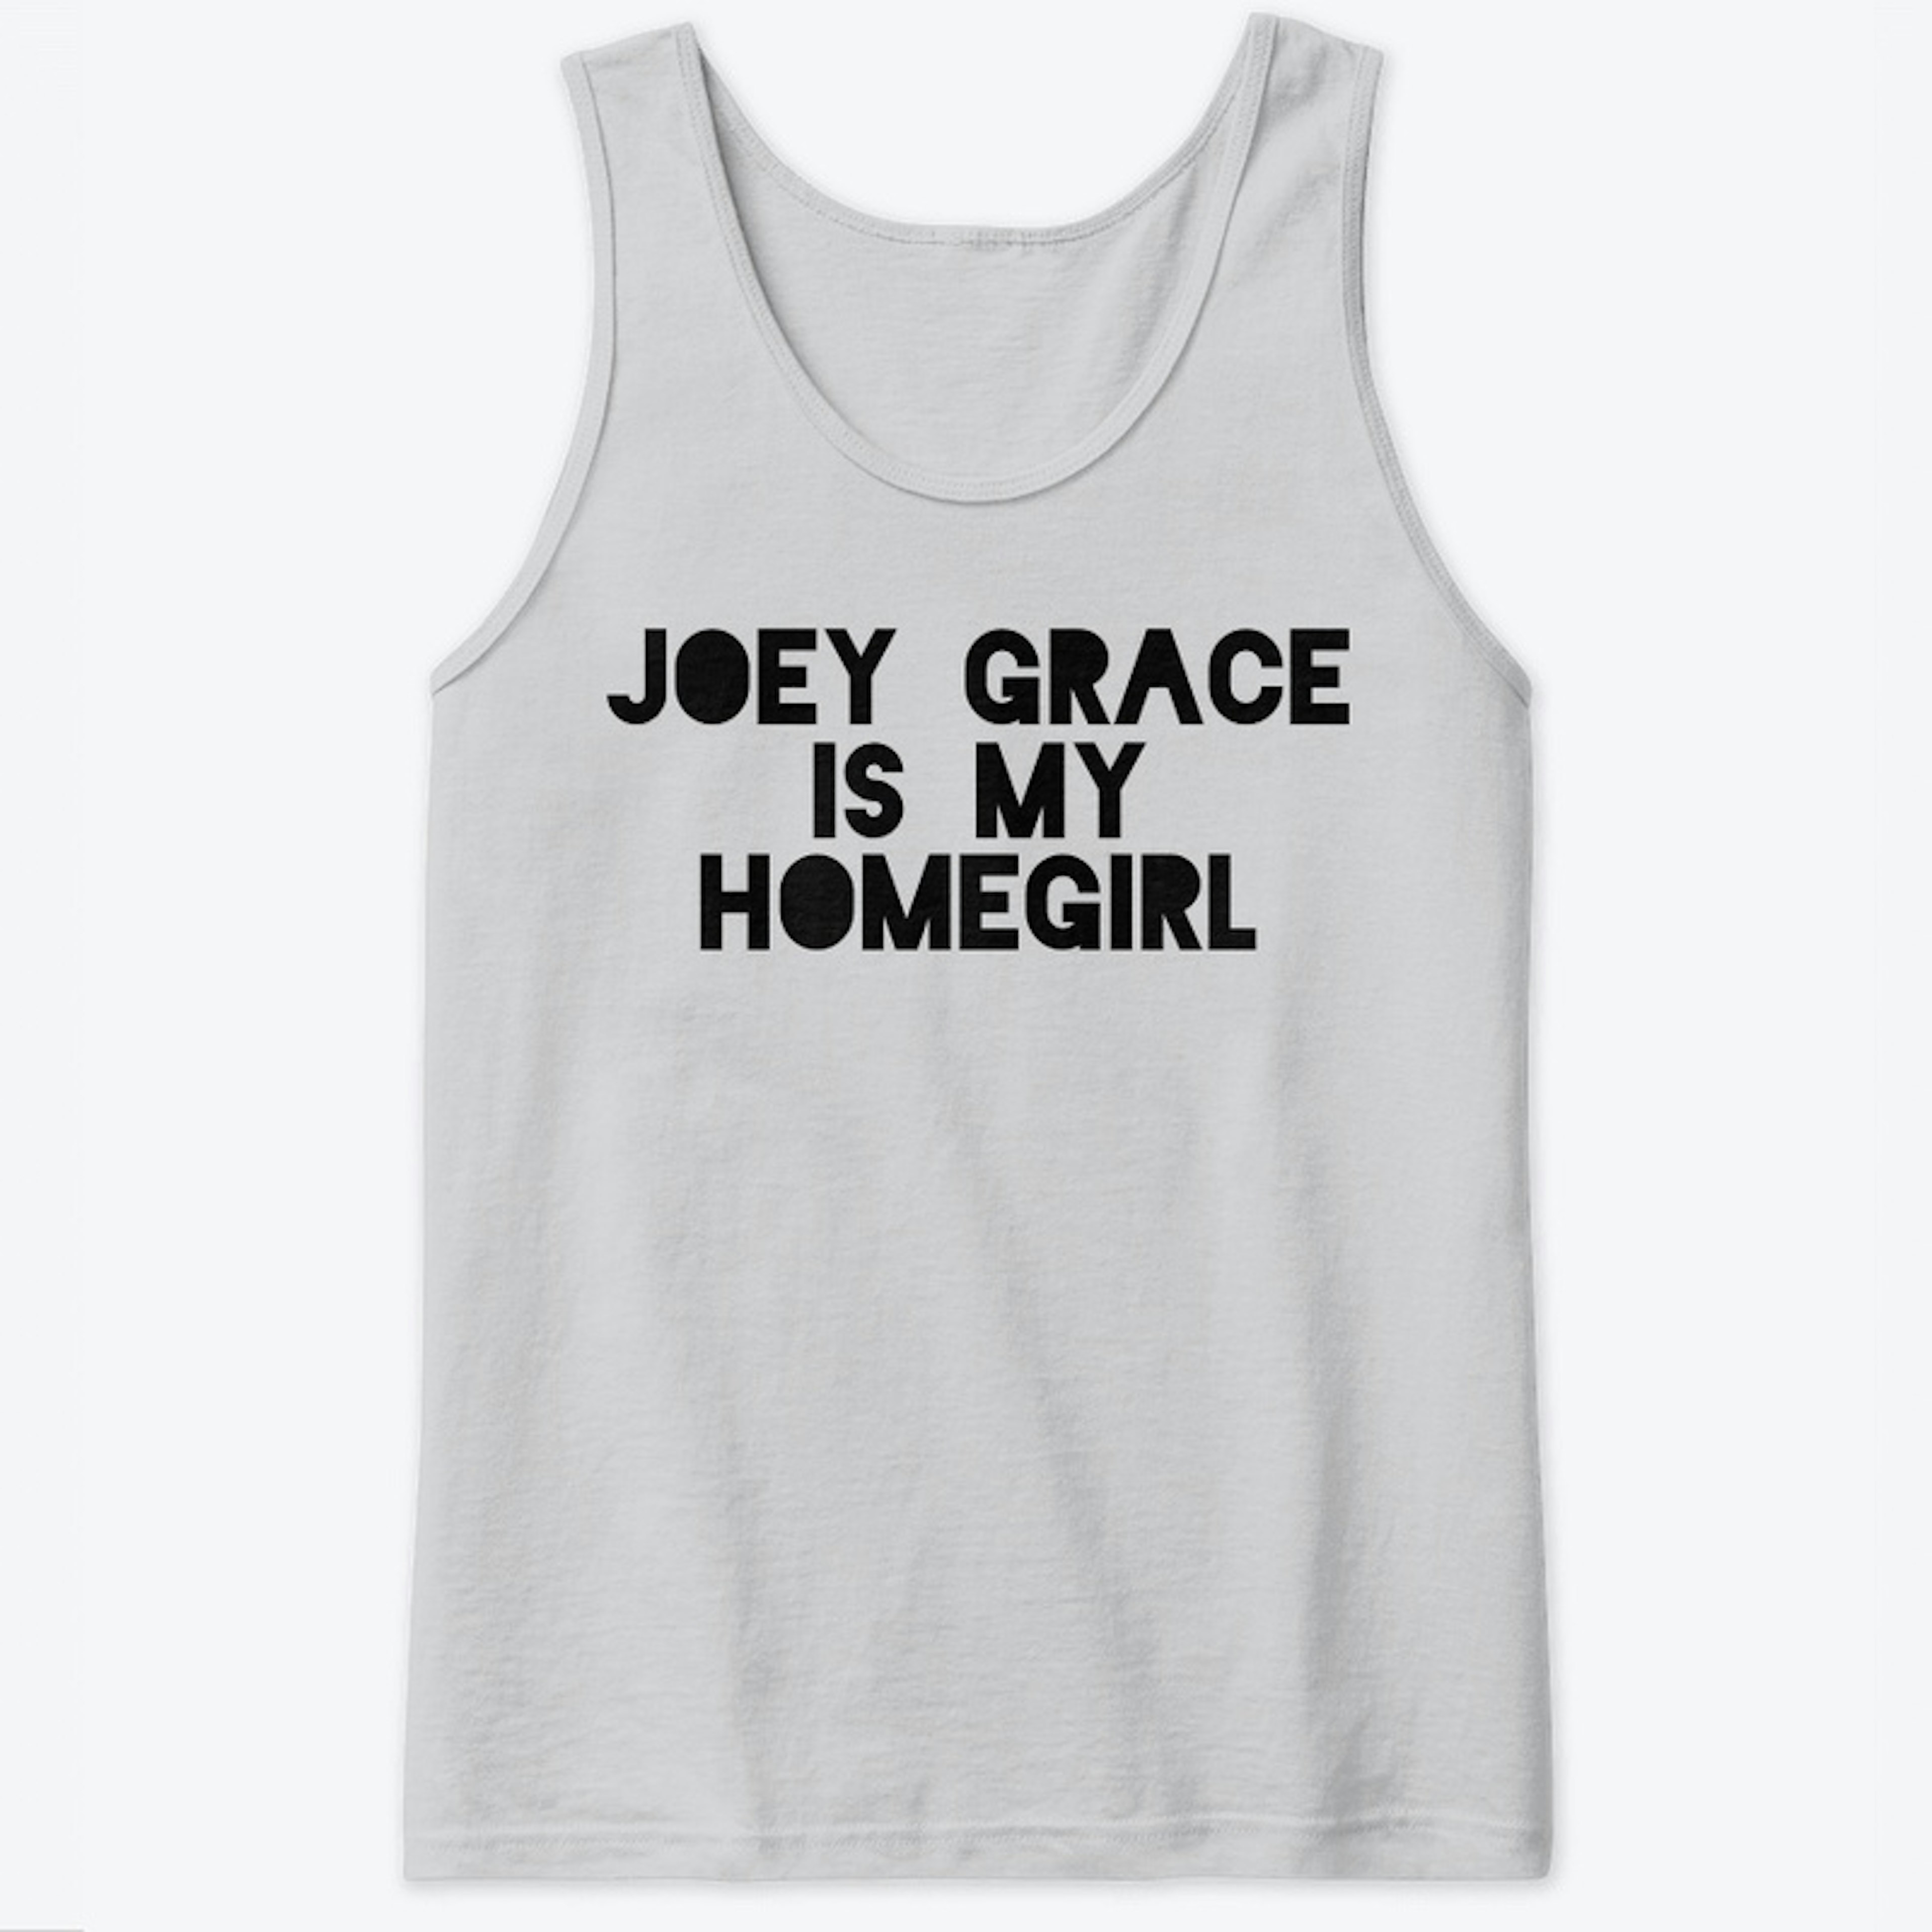 "JOEY GRACE IS MY HOMEGIRL" MENS TANK